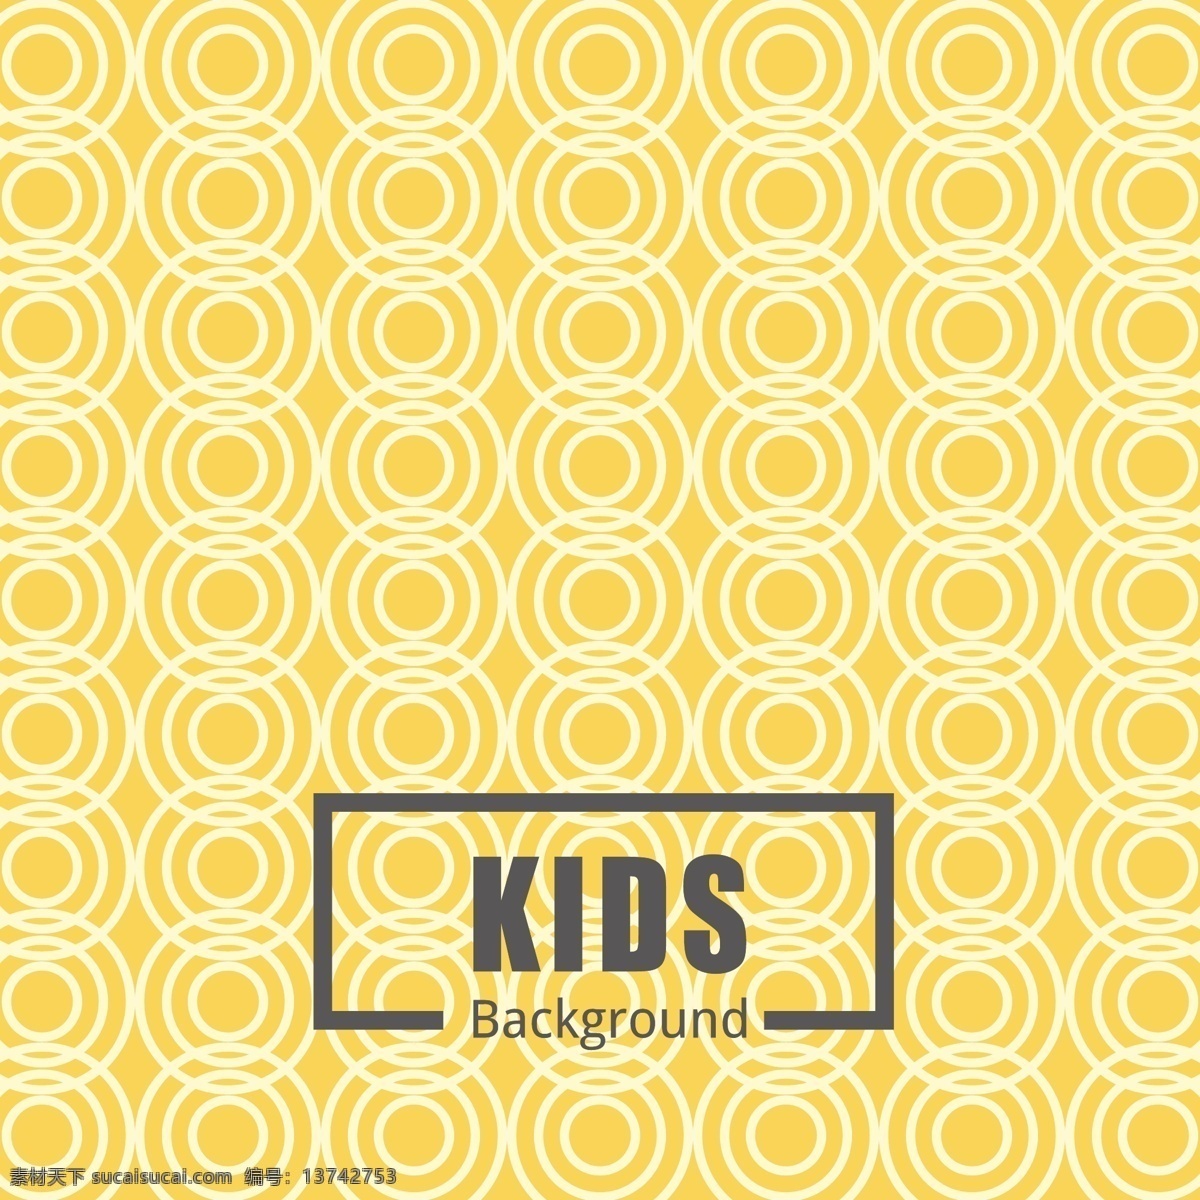 儿童 黄色 图案 背景 抽象 婴儿 纹理 圆形 可爱 装饰 绘图 圆点 甜 圆 印刷 马赛克 无缝 循环